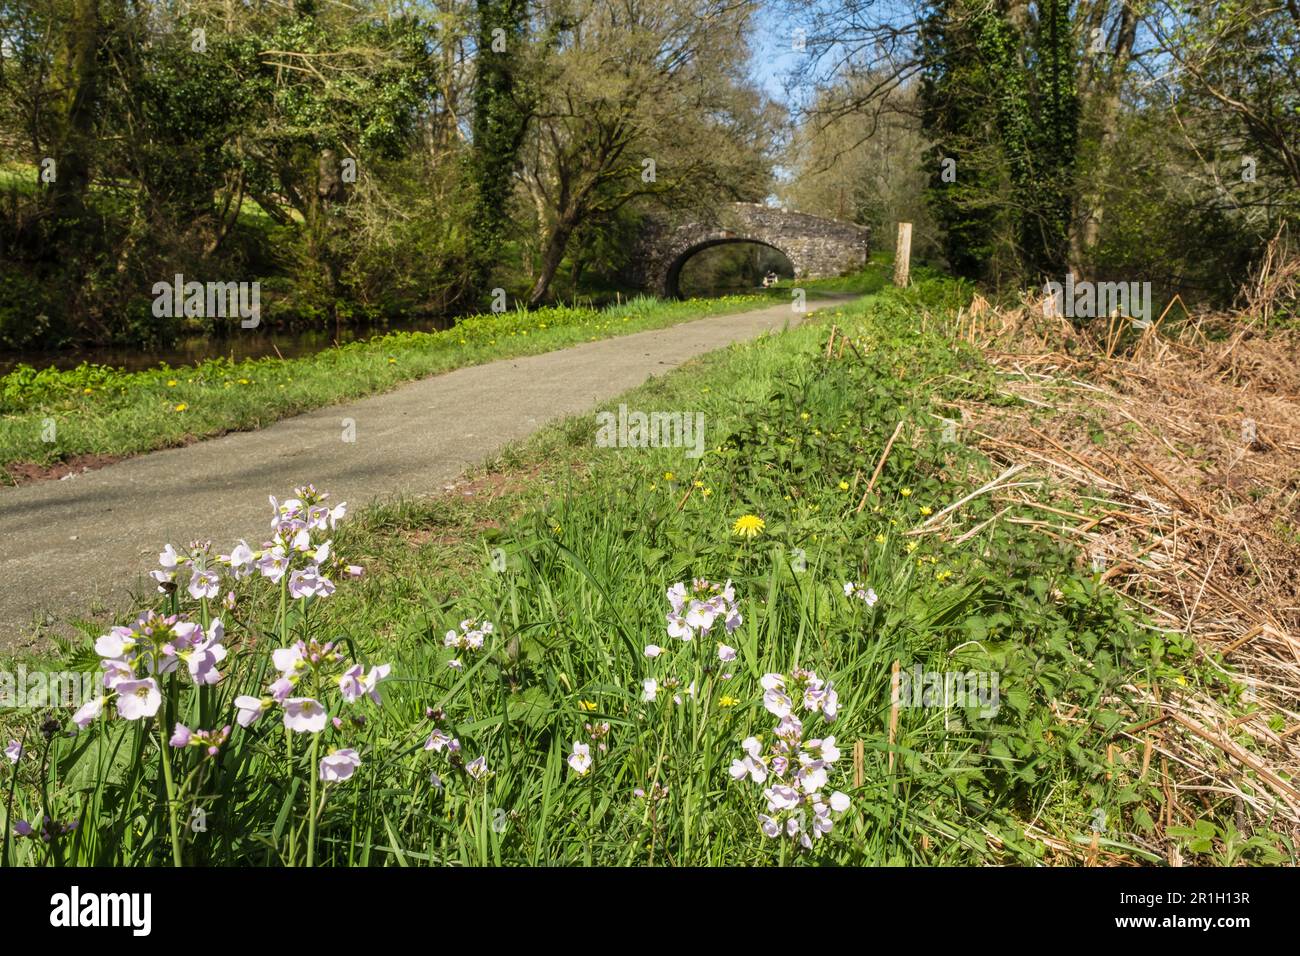 Le ladys Smock ou Cuckoo Flower (Cardamine pratensis) fleurit à côté de Monbucshire et du canal Brecon dans le parc national de Brecon Beacons. Pencelli pays de Galles Royaume-Uni Banque D'Images